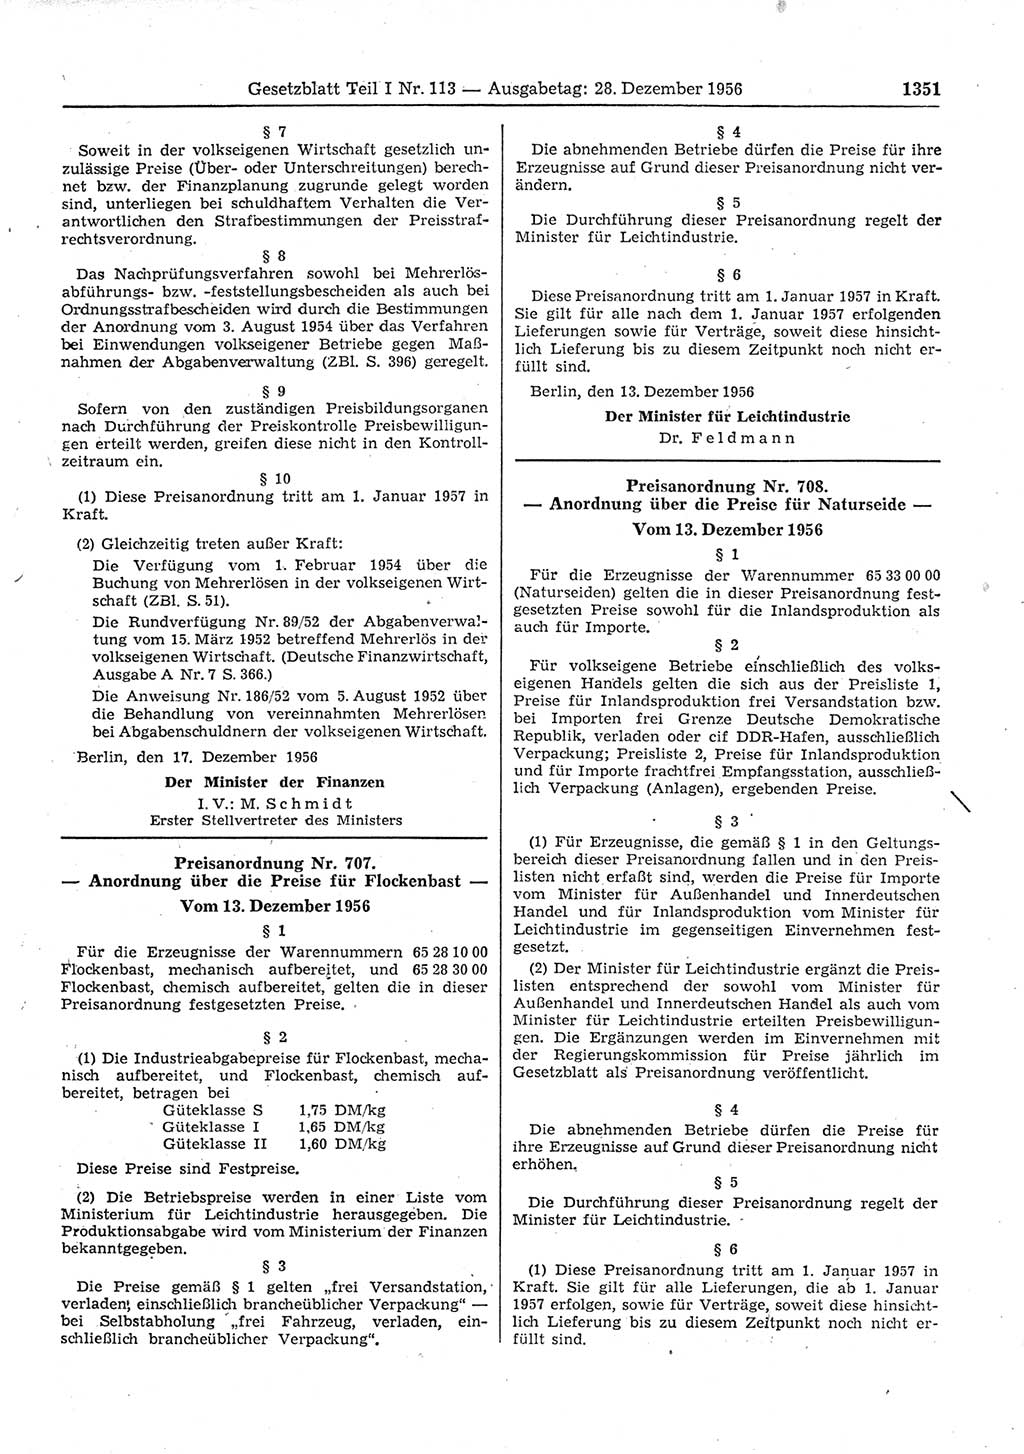 Gesetzblatt (GBl.) der Deutschen Demokratischen Republik (DDR) Teil Ⅰ 1956, Seite 1351 (GBl. DDR Ⅰ 1956, S. 1351)